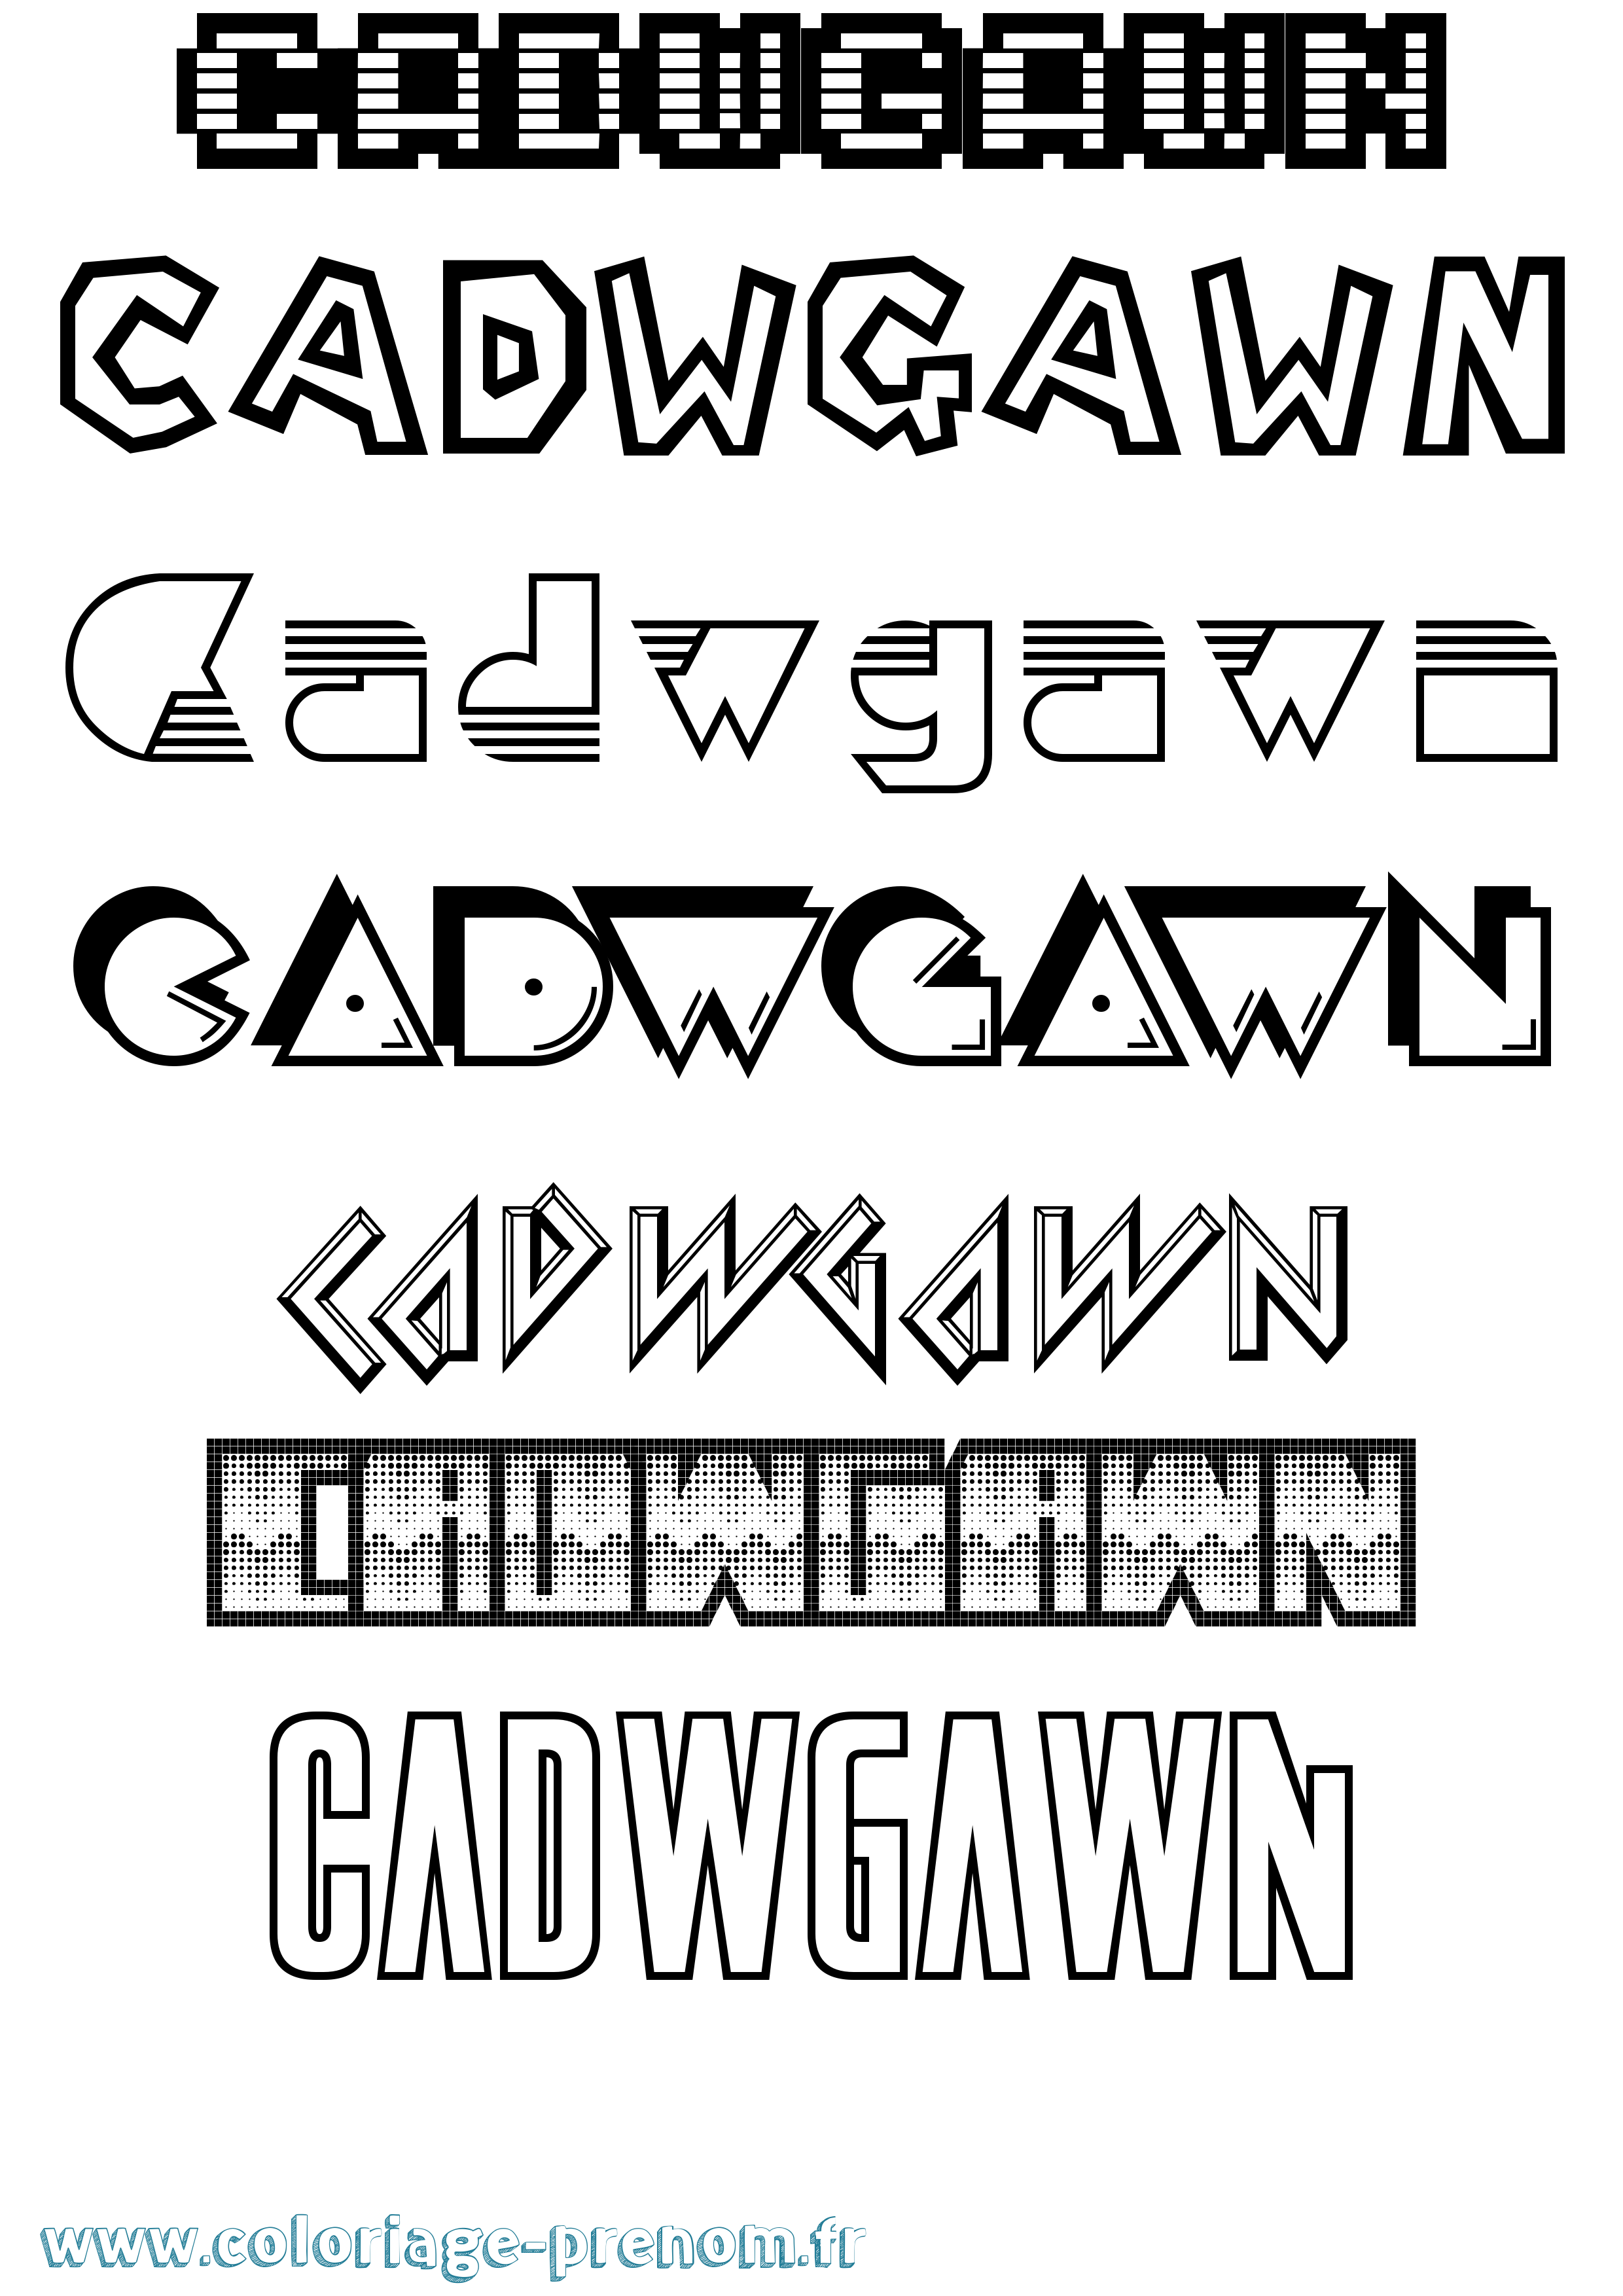 Coloriage prénom Cadwgawn Jeux Vidéos